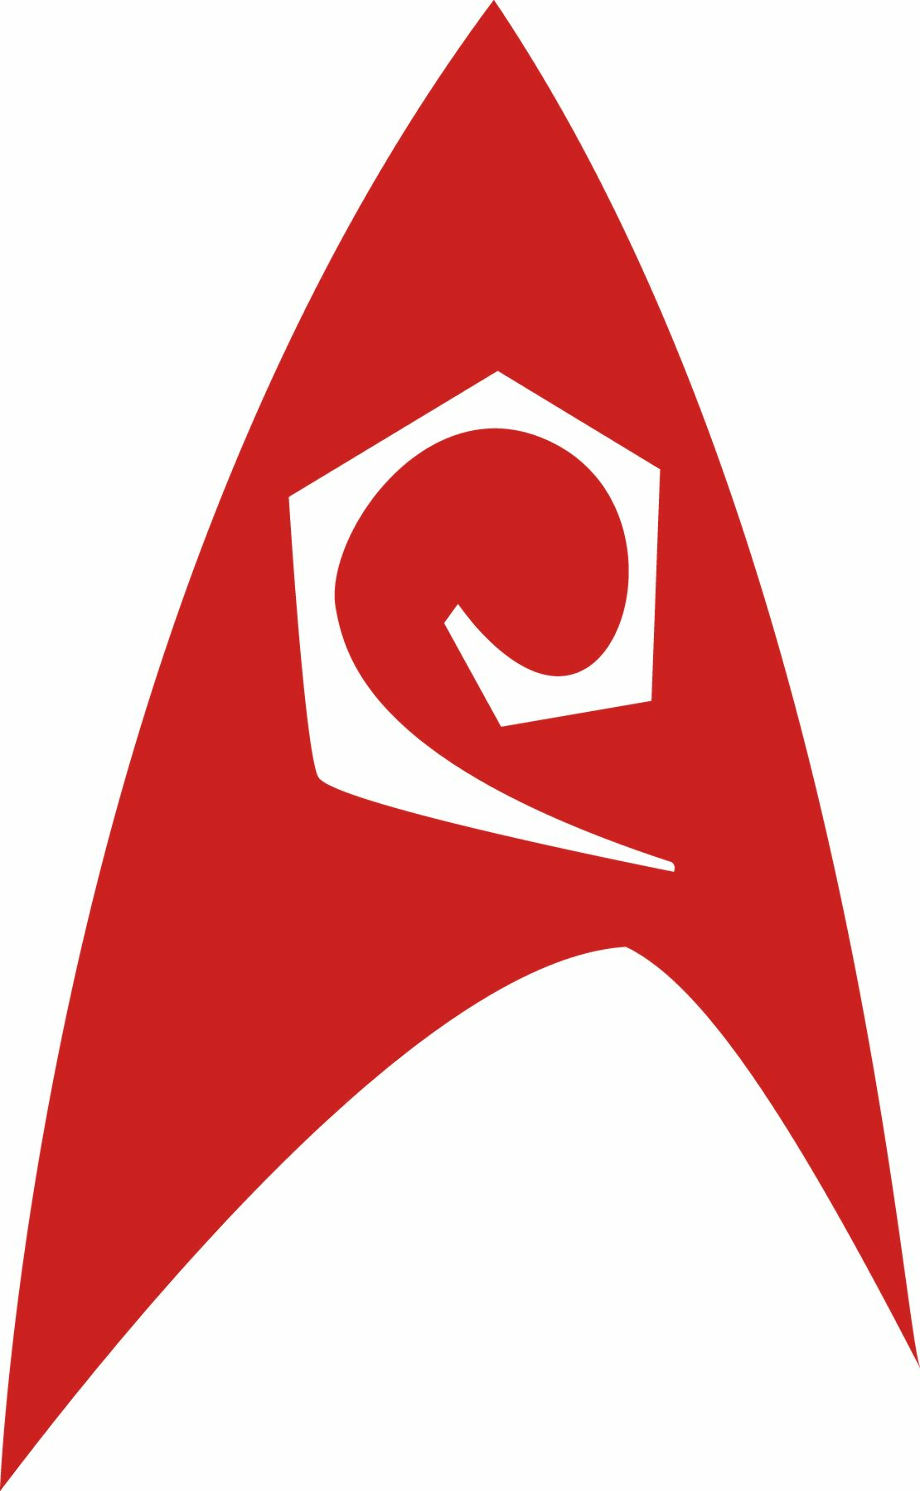 star trek logo red